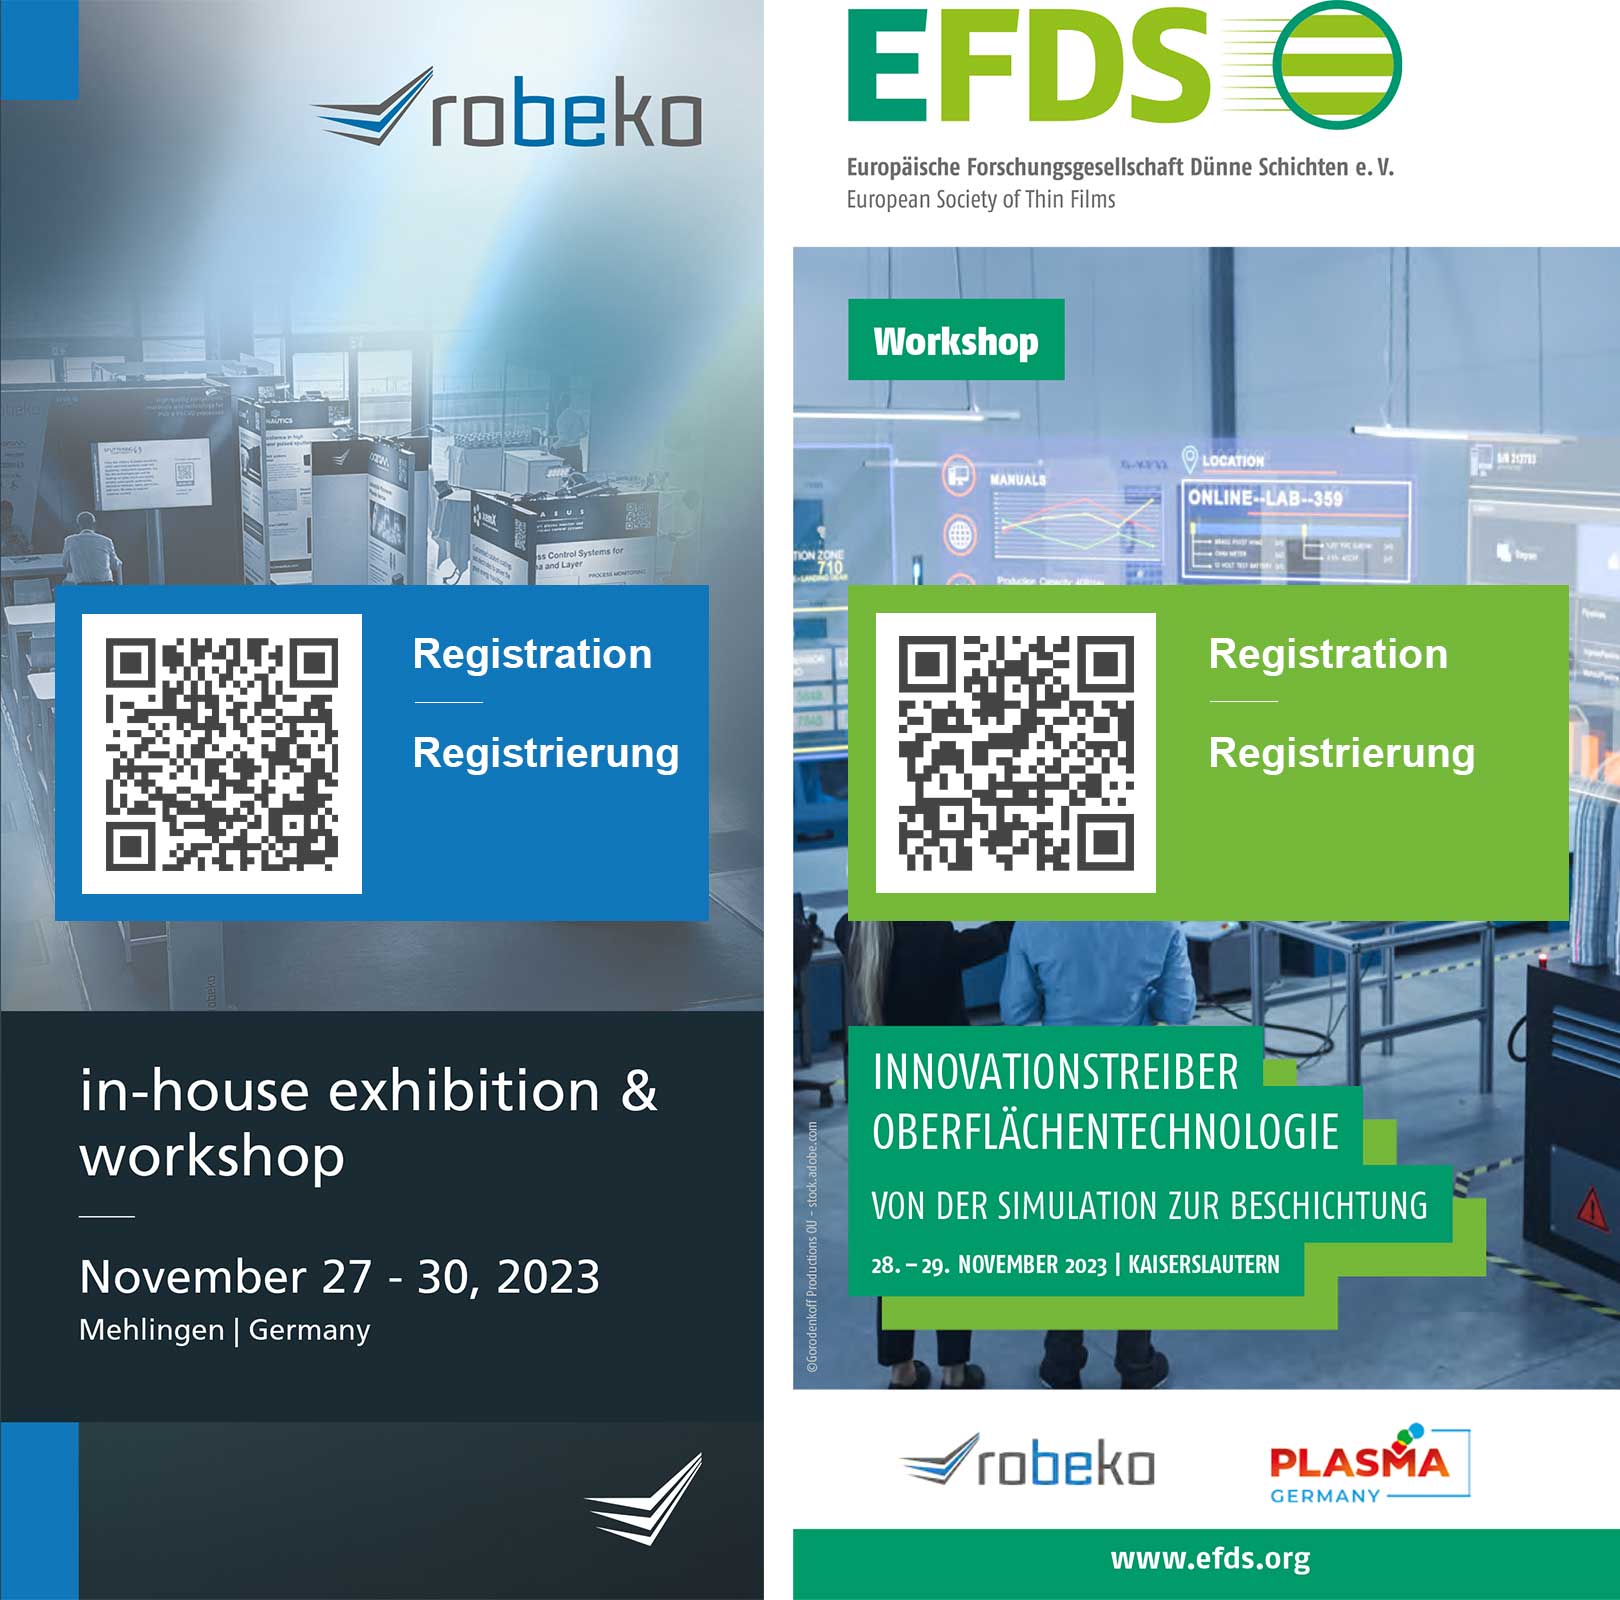 EFDS Workshop in Kaiserslautern vom 28. bis 29. November 2023 | robeko, plasma germany